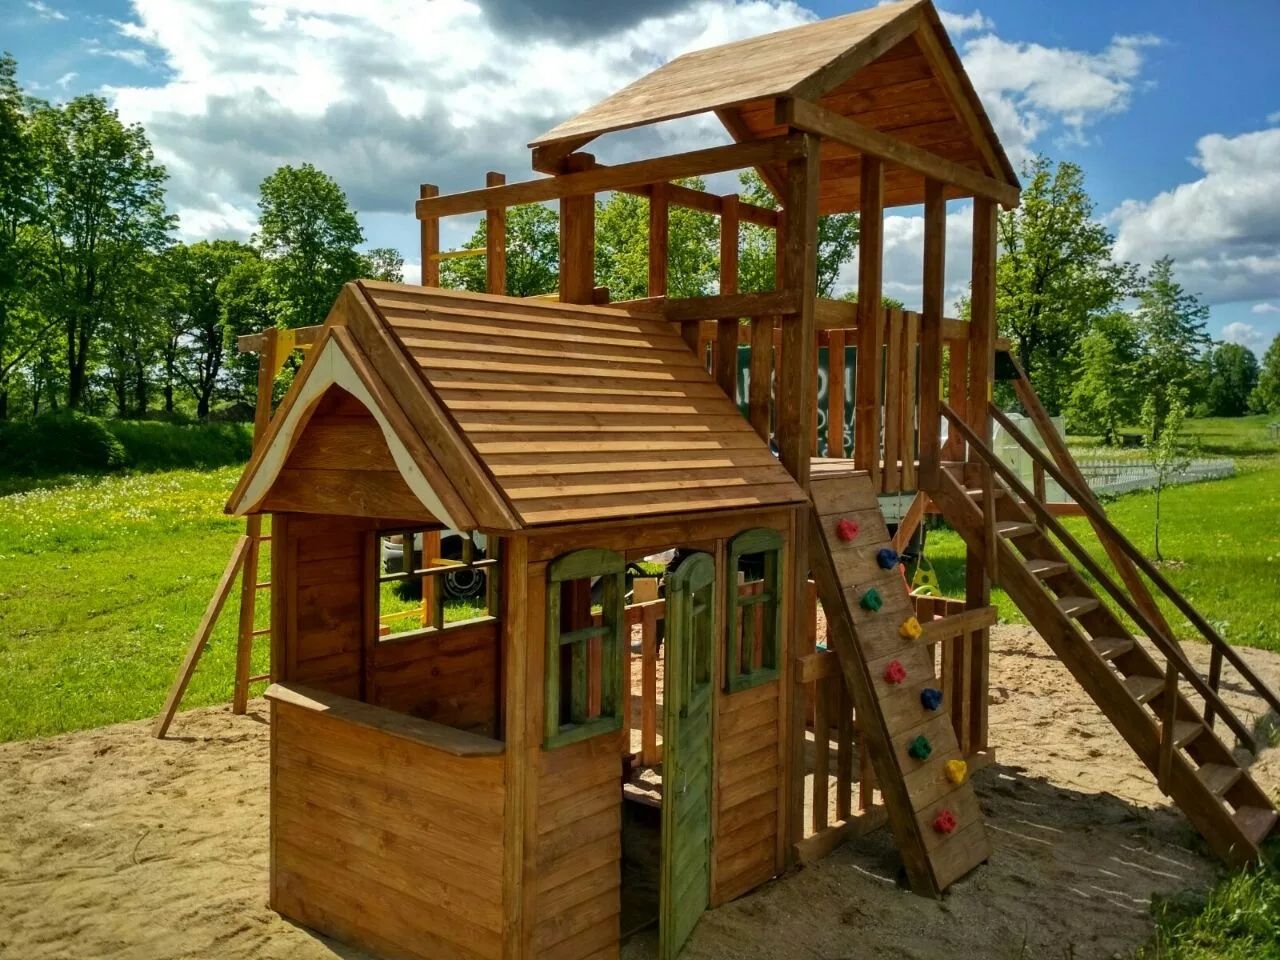 Деревянная игровая площадка для детей. Домик, горка